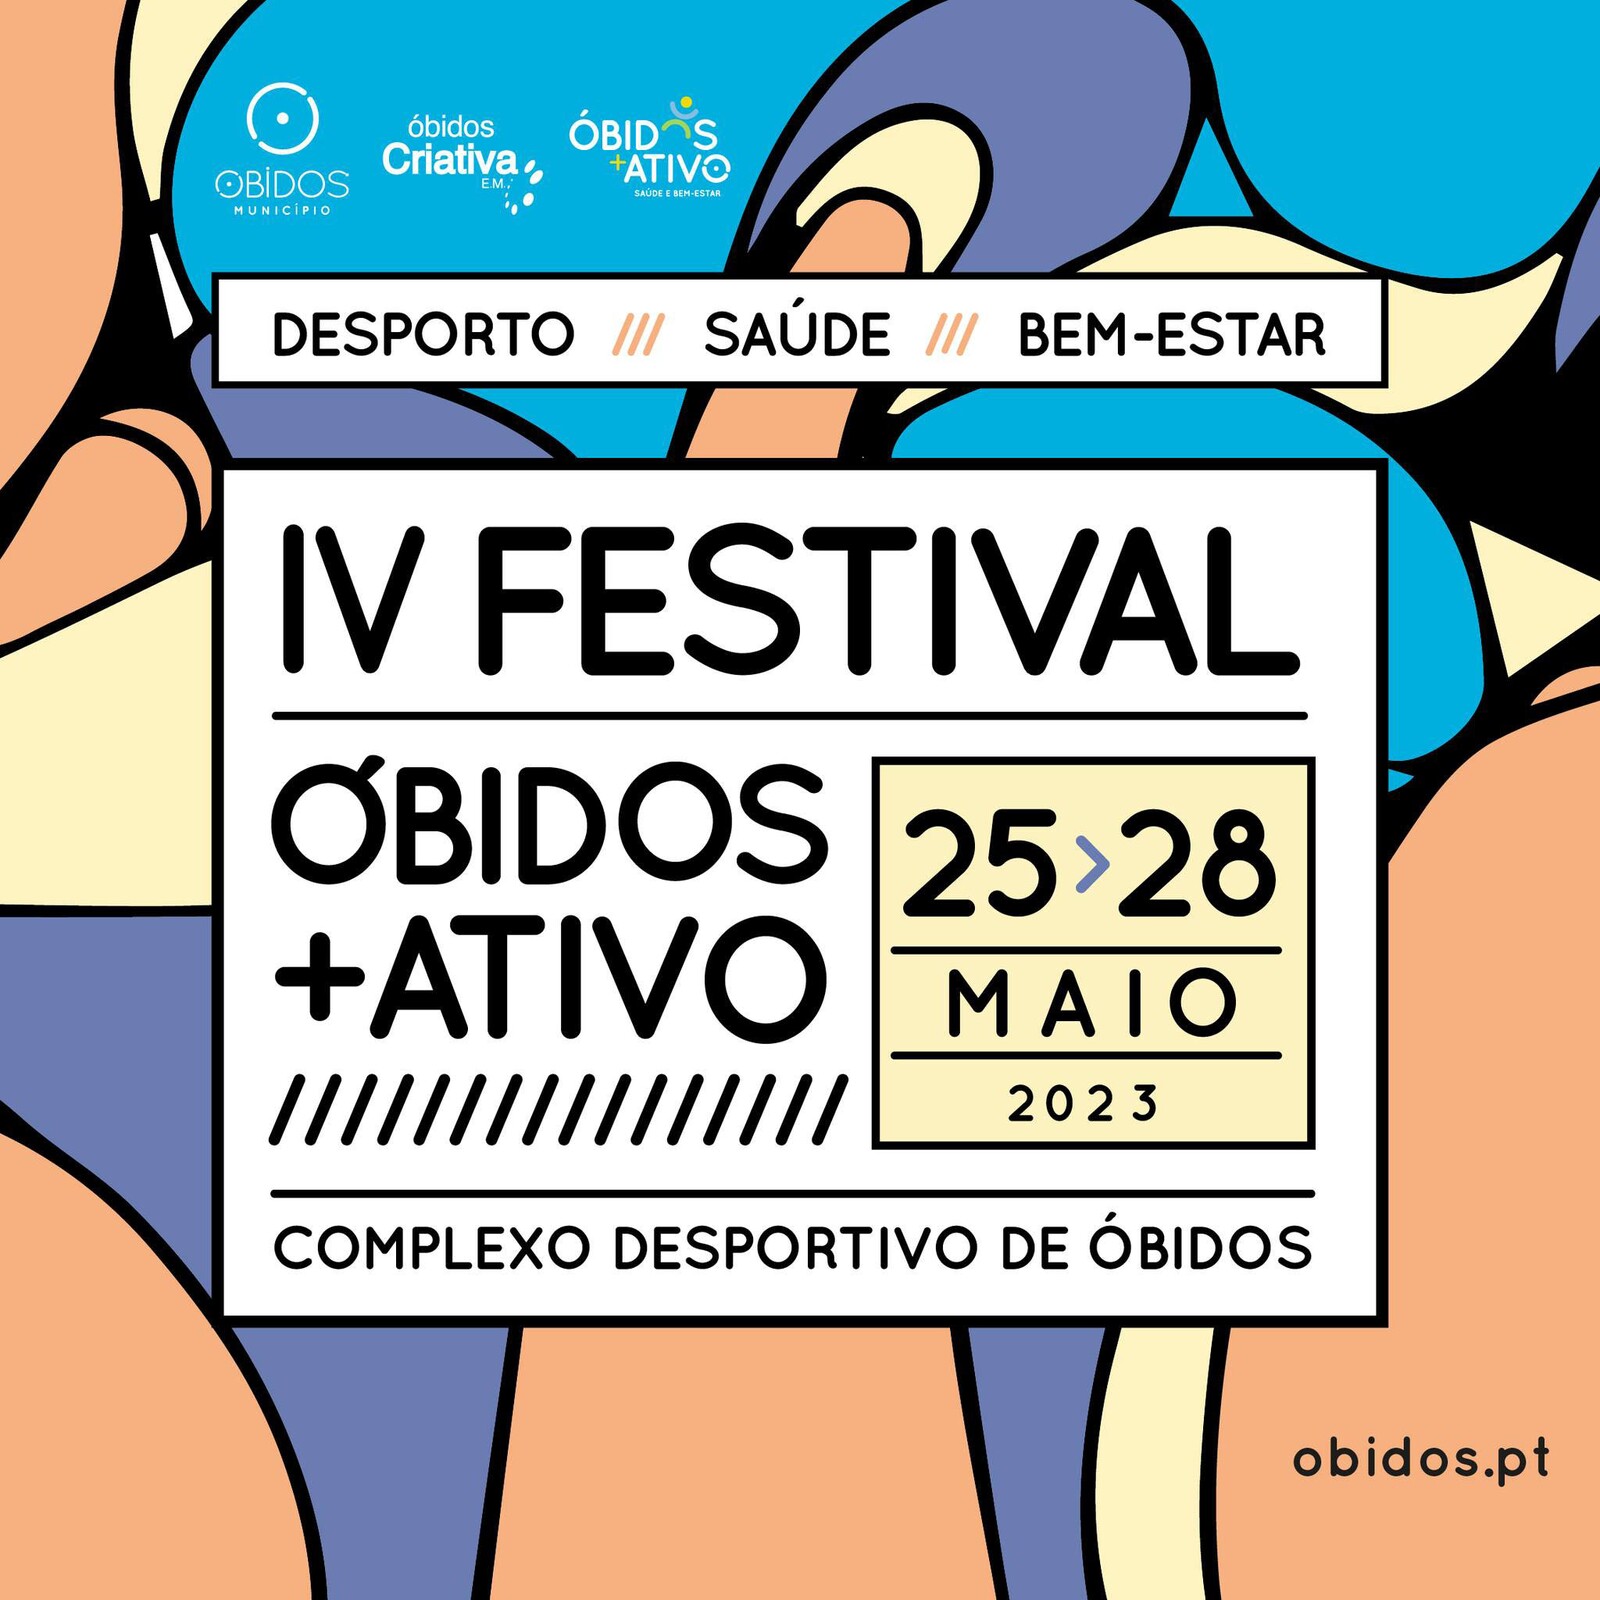 IV Festival Óbidos + Ativo